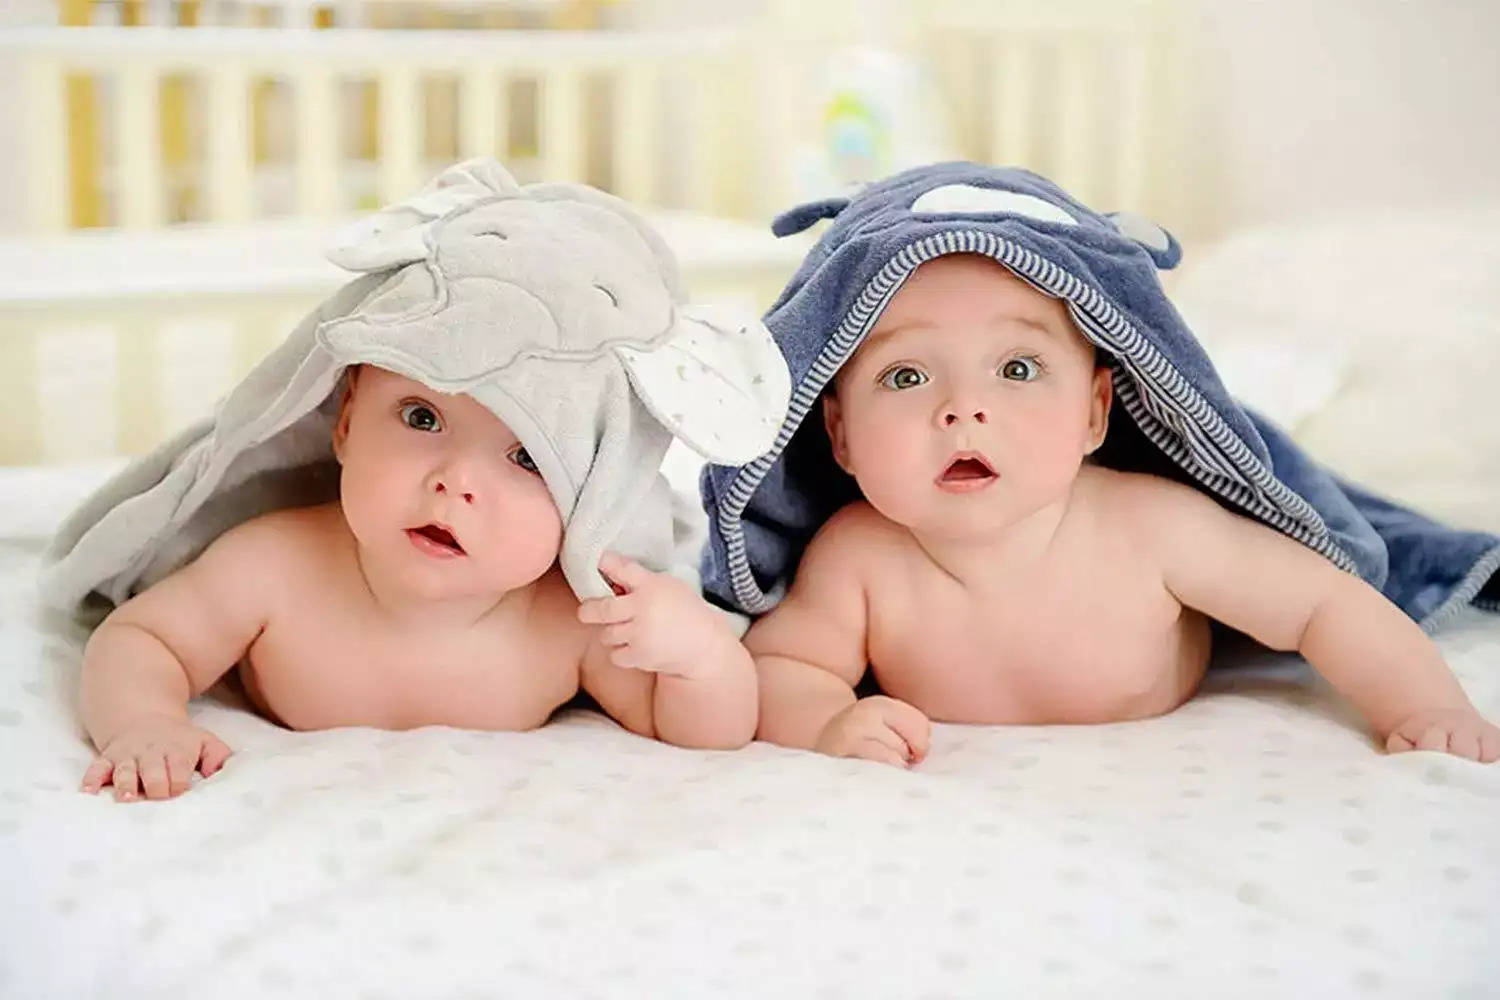 Pregnancy Tips- गर्भावस्था के दौरान दिखाई दें ये लक्षण, तो समझ जाएं की जुड़वा बच्चे होने वाले हैं